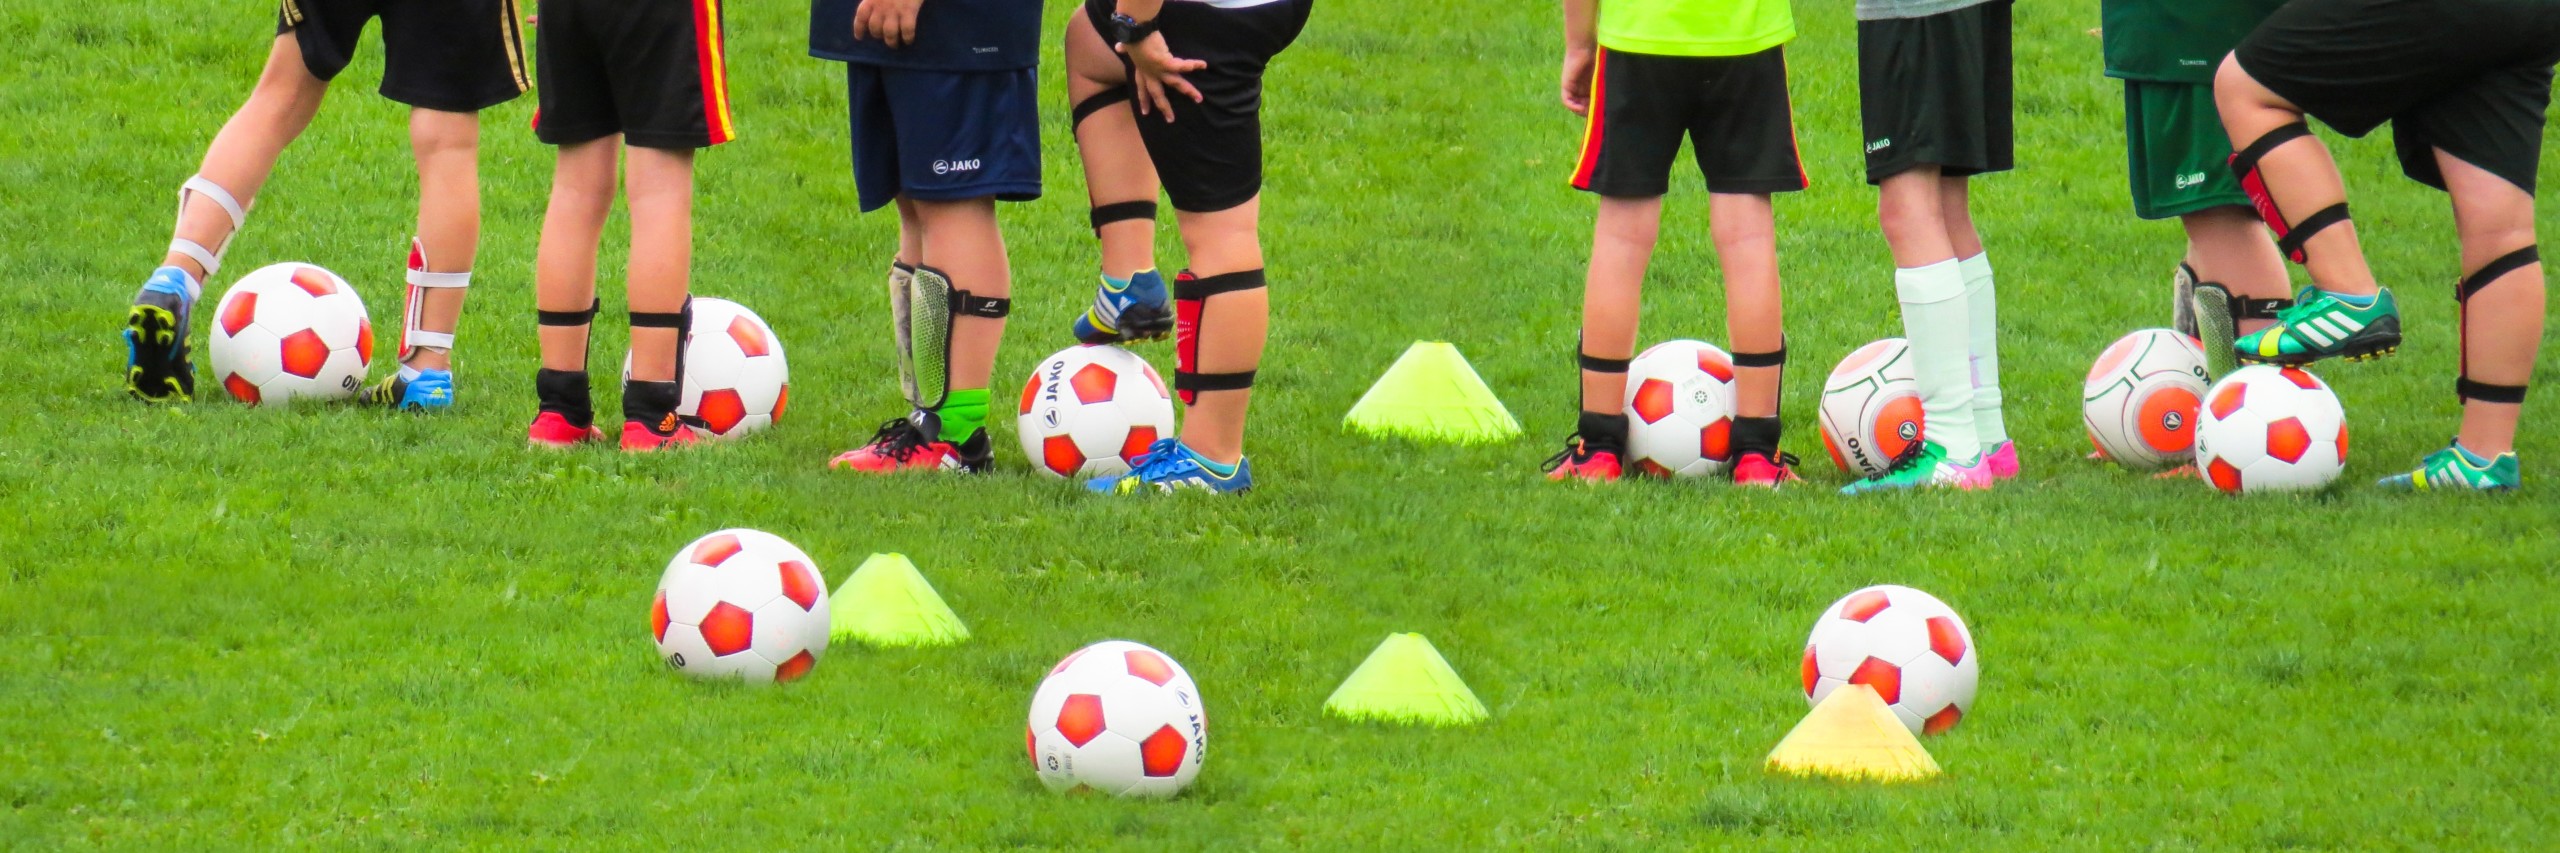 Fußballer-Beine, Bälle und Kegel